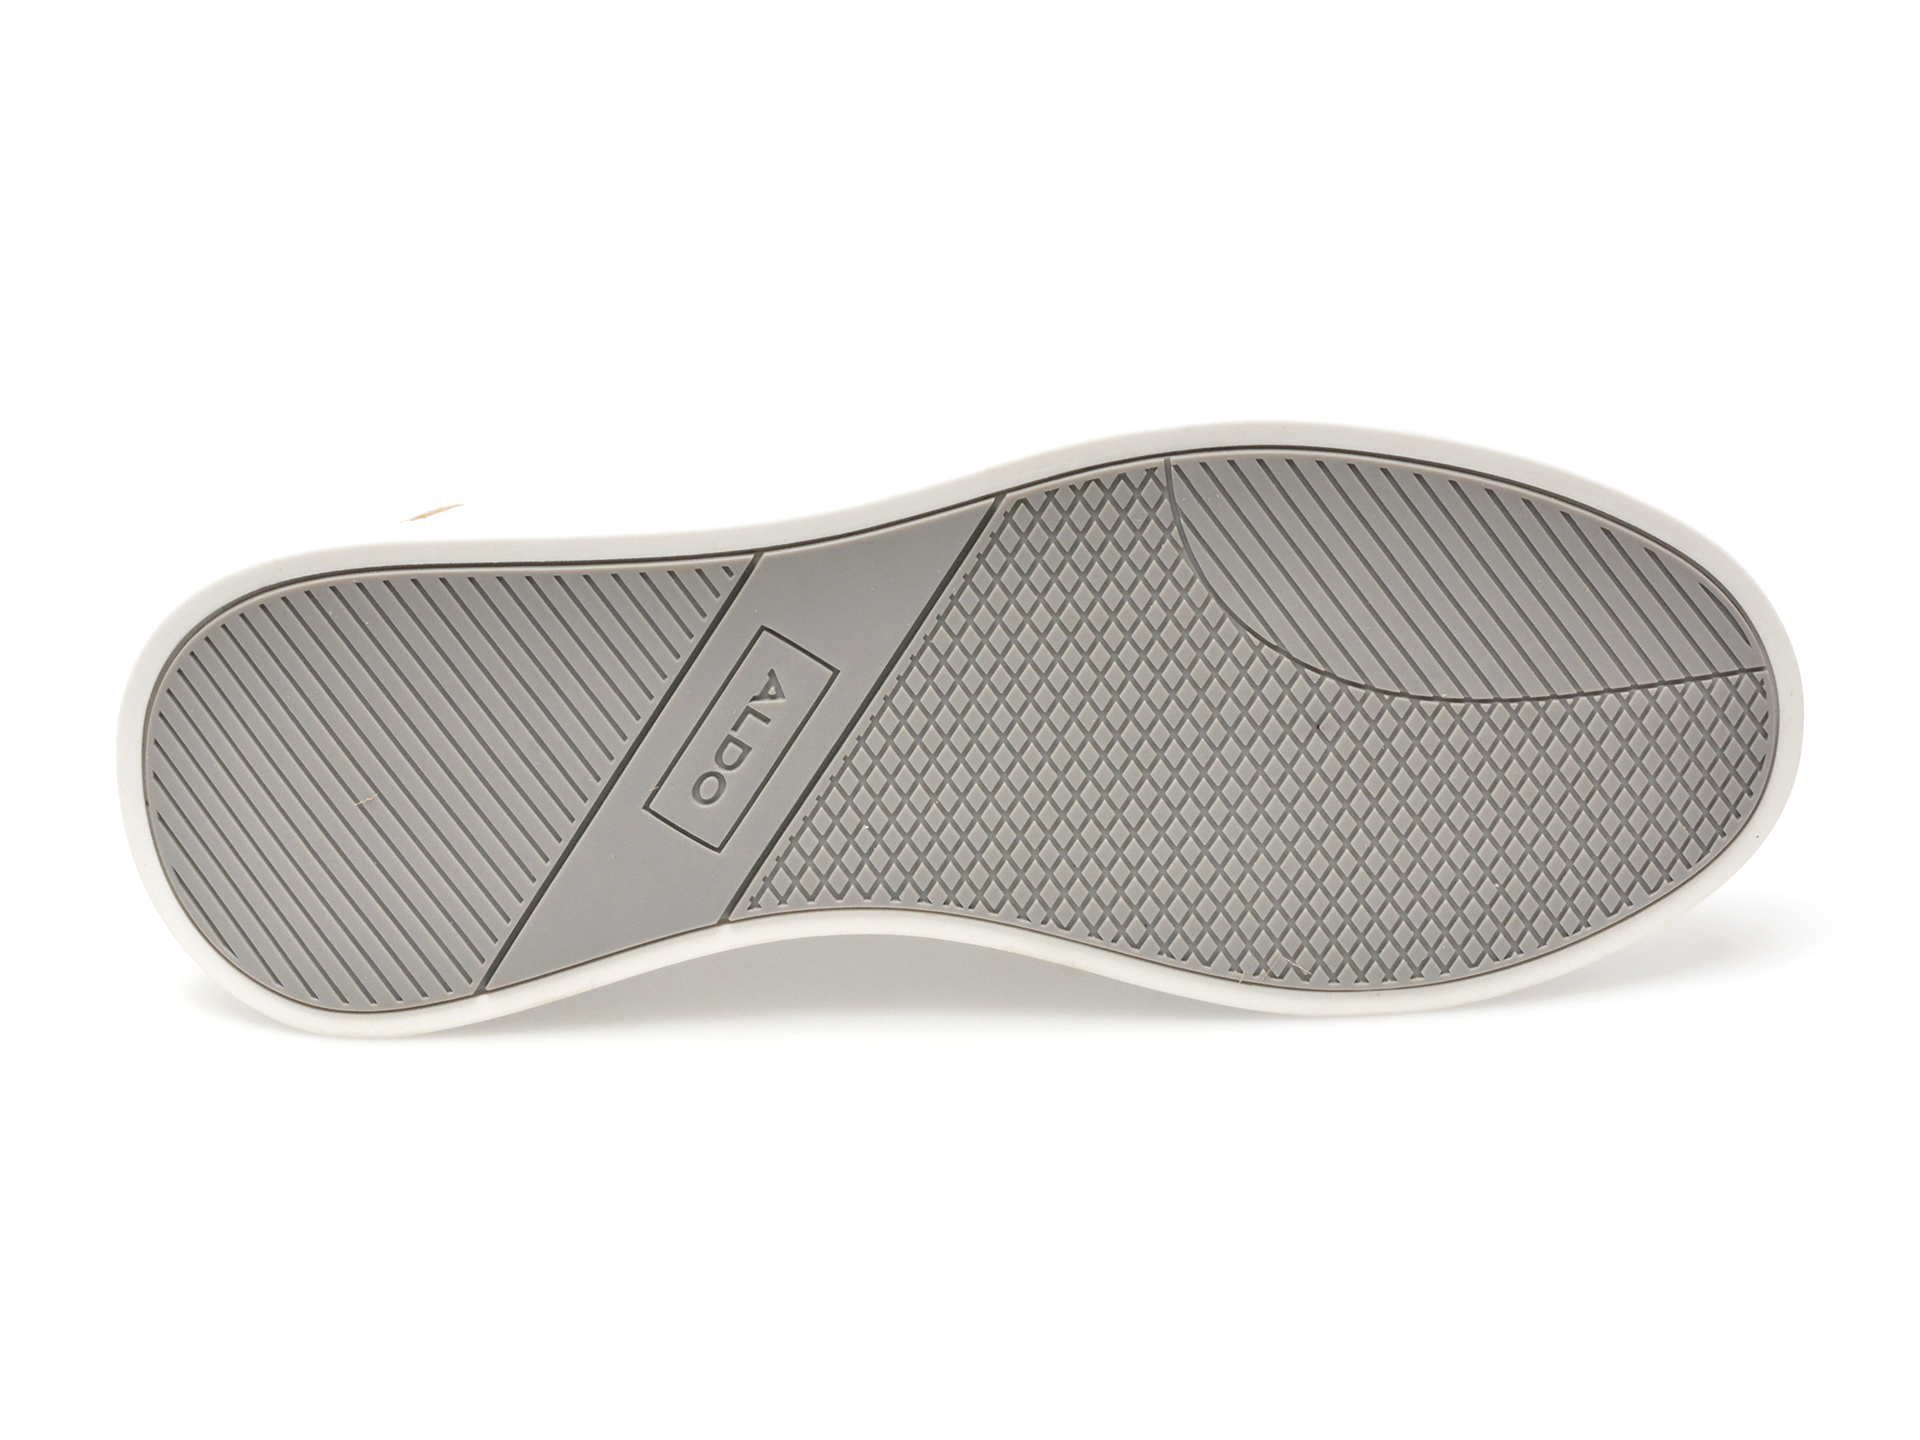 Pantofi ALDO albi, PRIMESPEC100, din piele ecologica